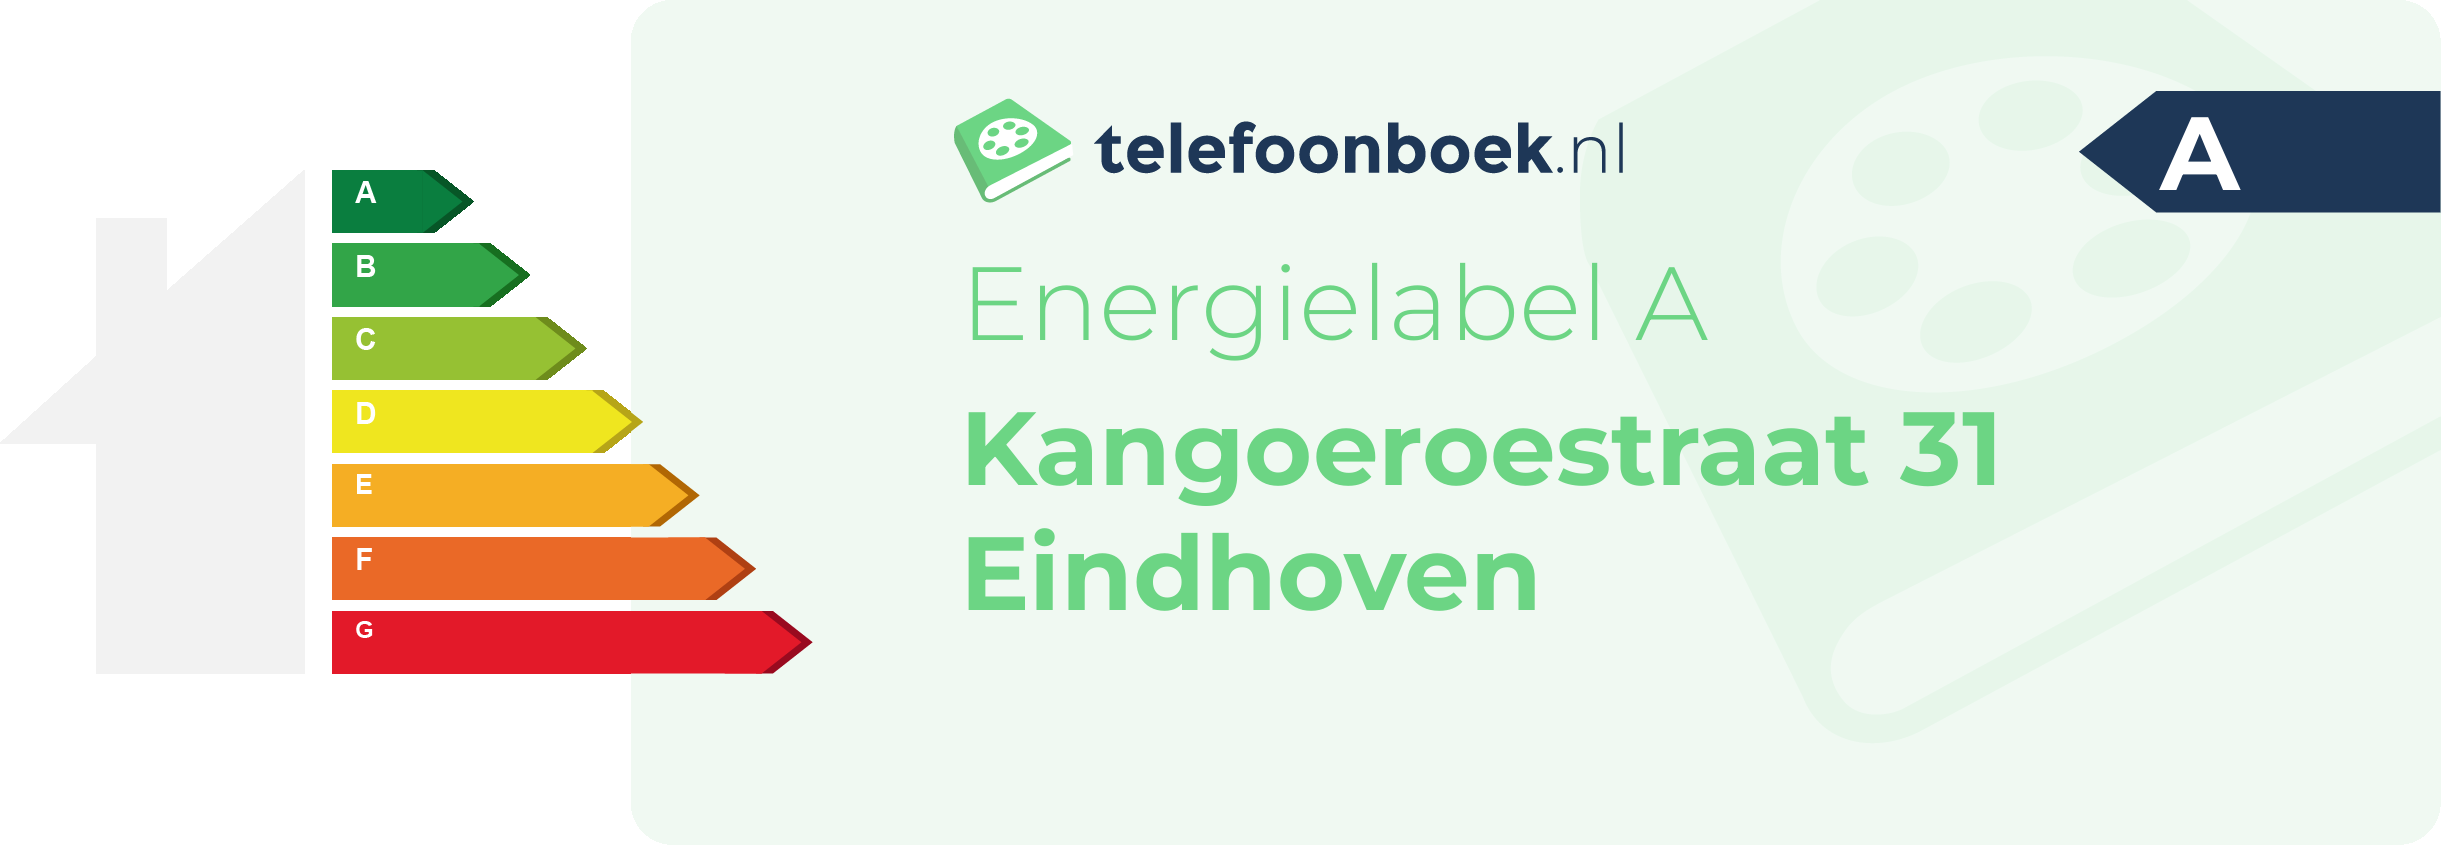 Energielabel Kangoeroestraat 31 Eindhoven